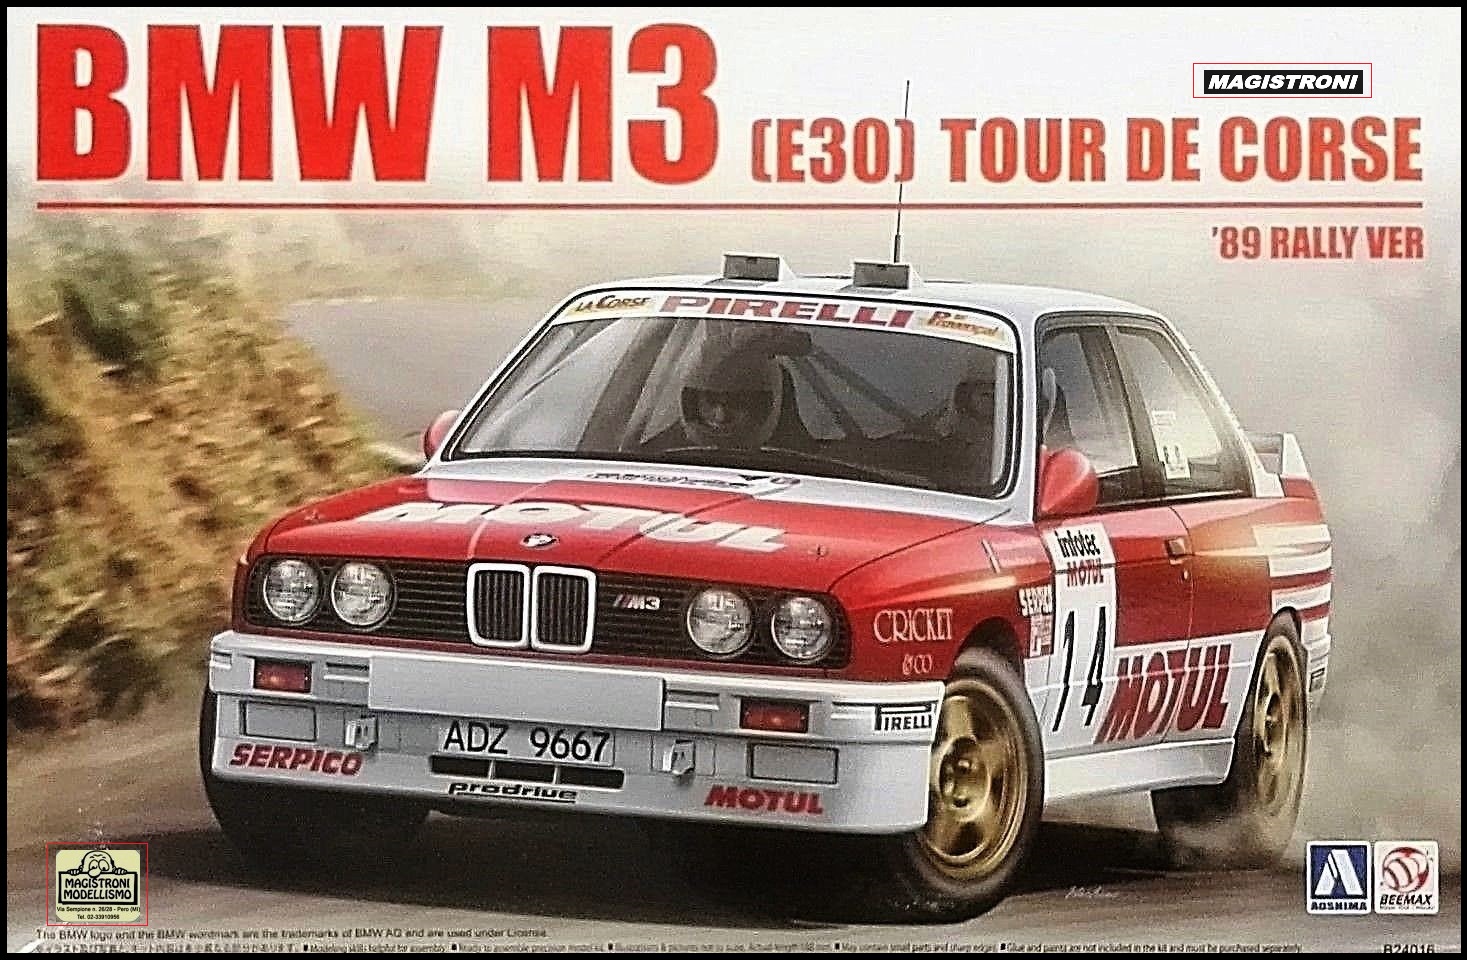 BMW M3 (E30) "89" Tour de Corse Rally Ver